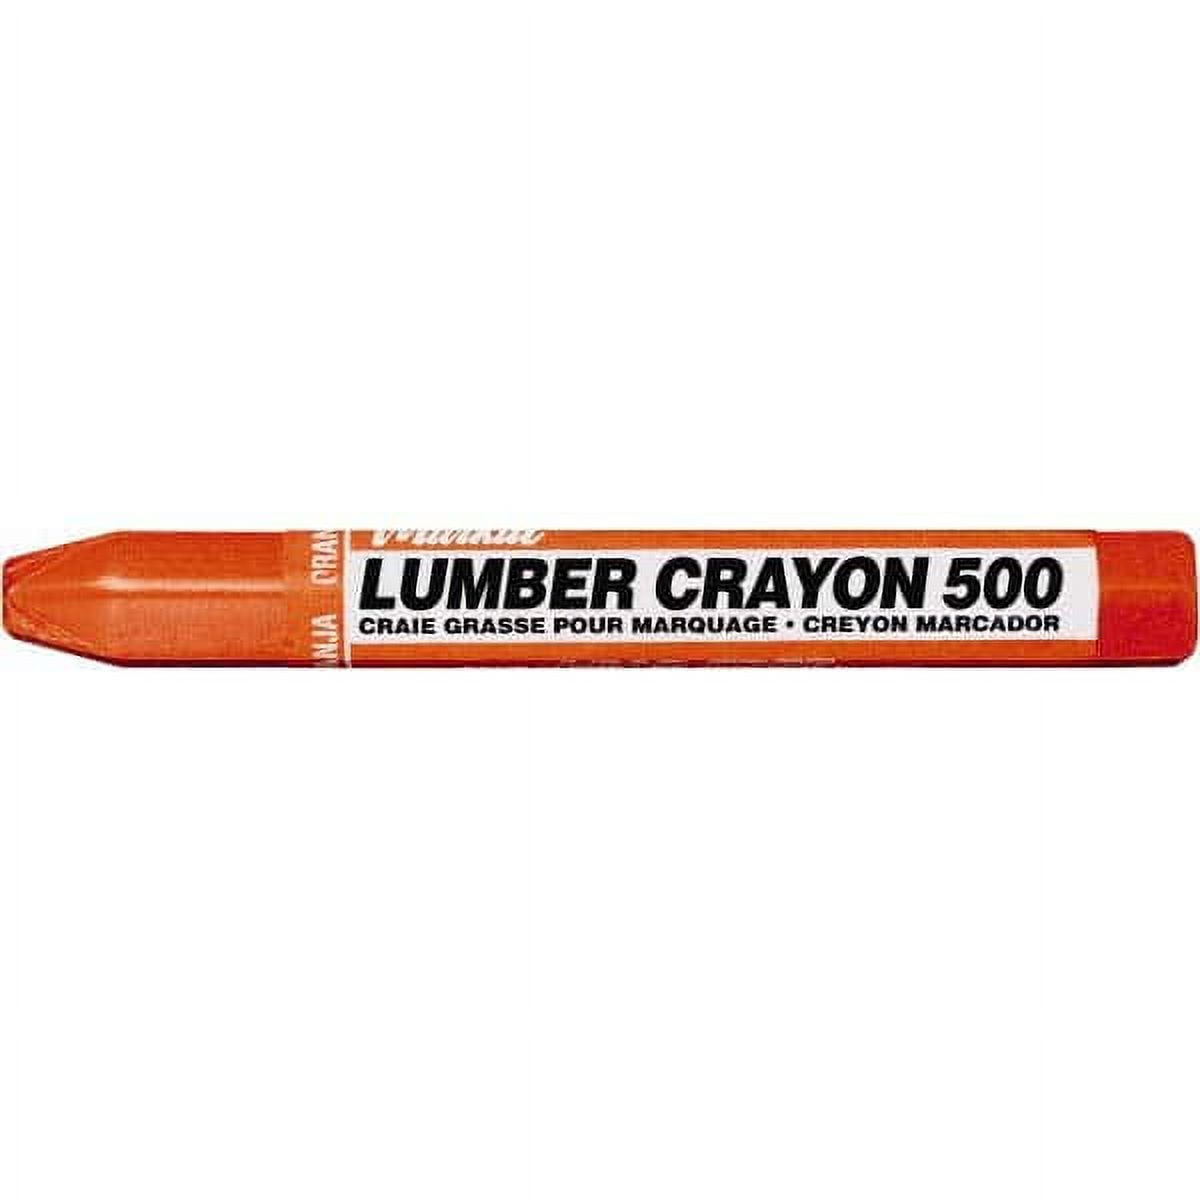 Crayola BIN575055-2 5 lbs Air Dry Clay White - 2 Each